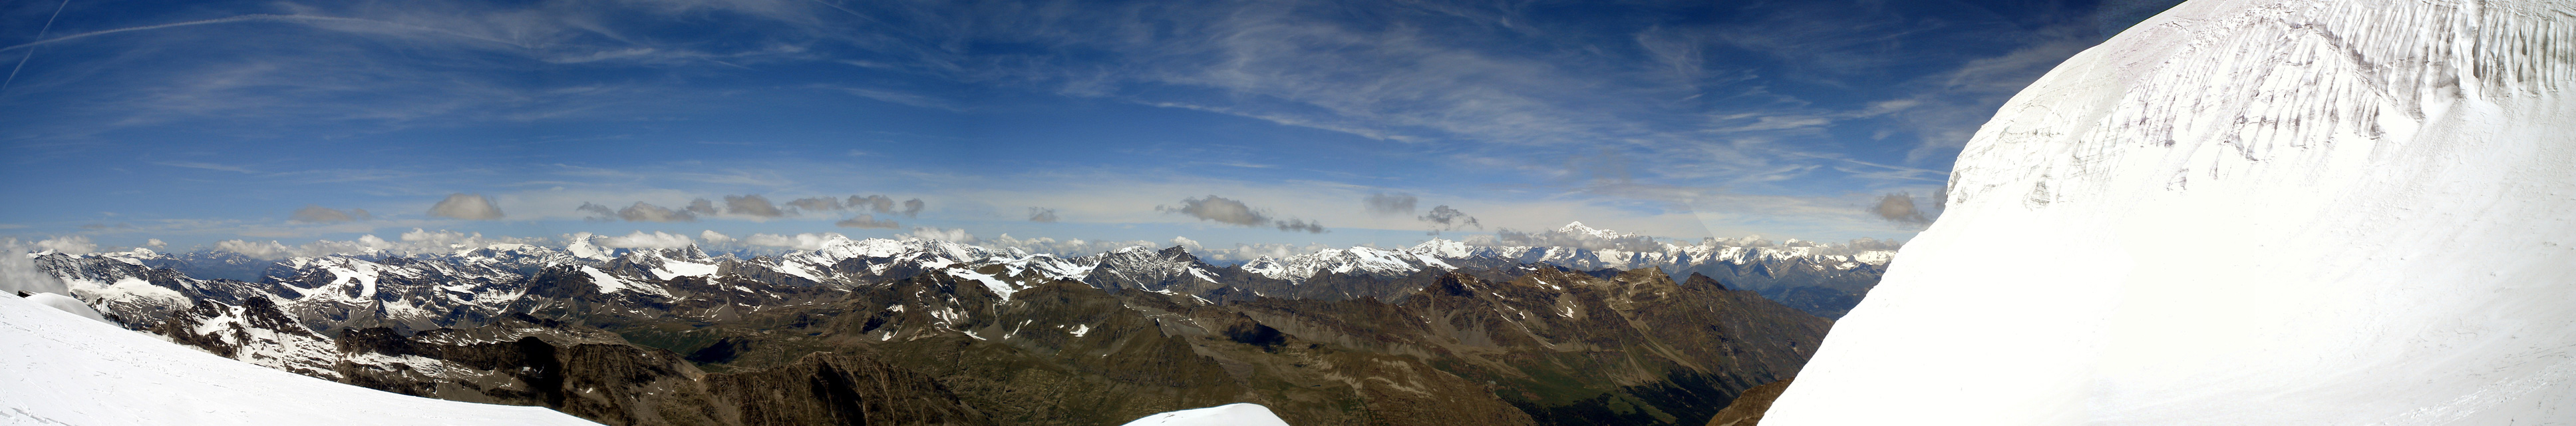 Vistas subiendo al Gran Paradiso (4061 m), a la derecha está el mismísimo Mont-Blanc (4807 m) el rey de los Alpes